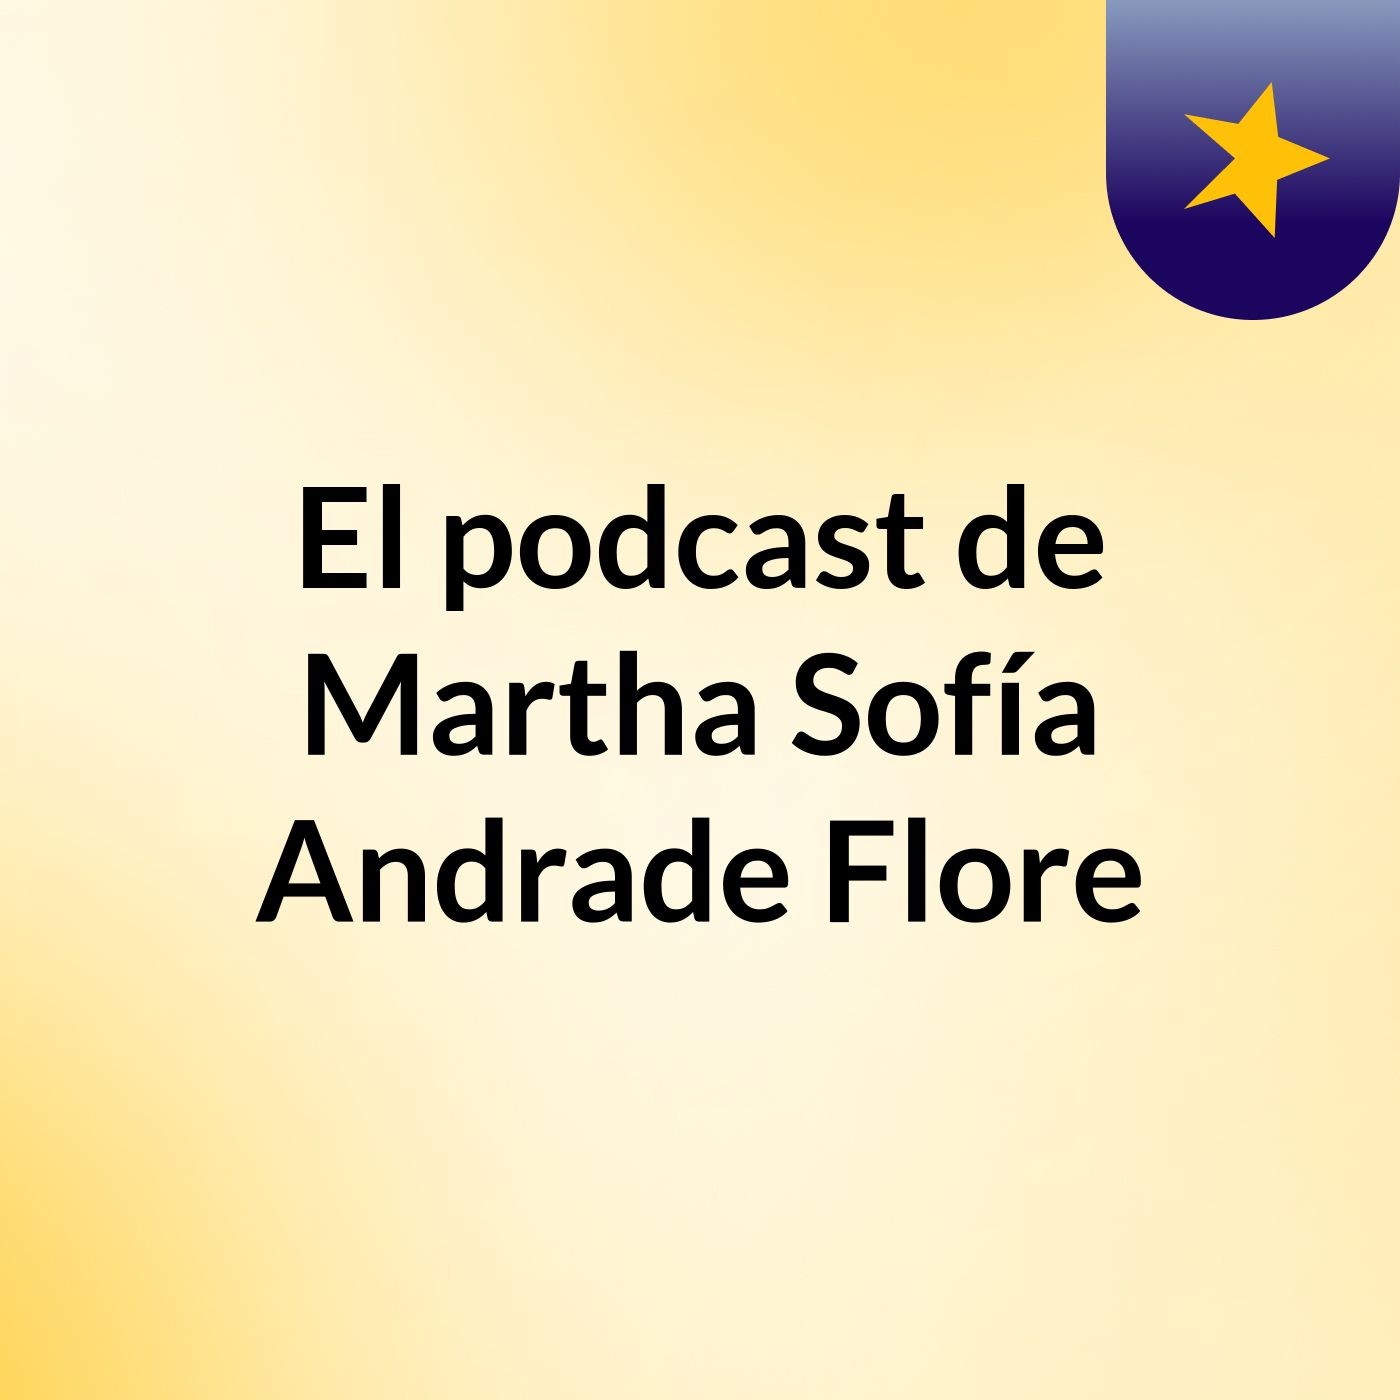 El podcast de Martha Sofía Andrade Flore